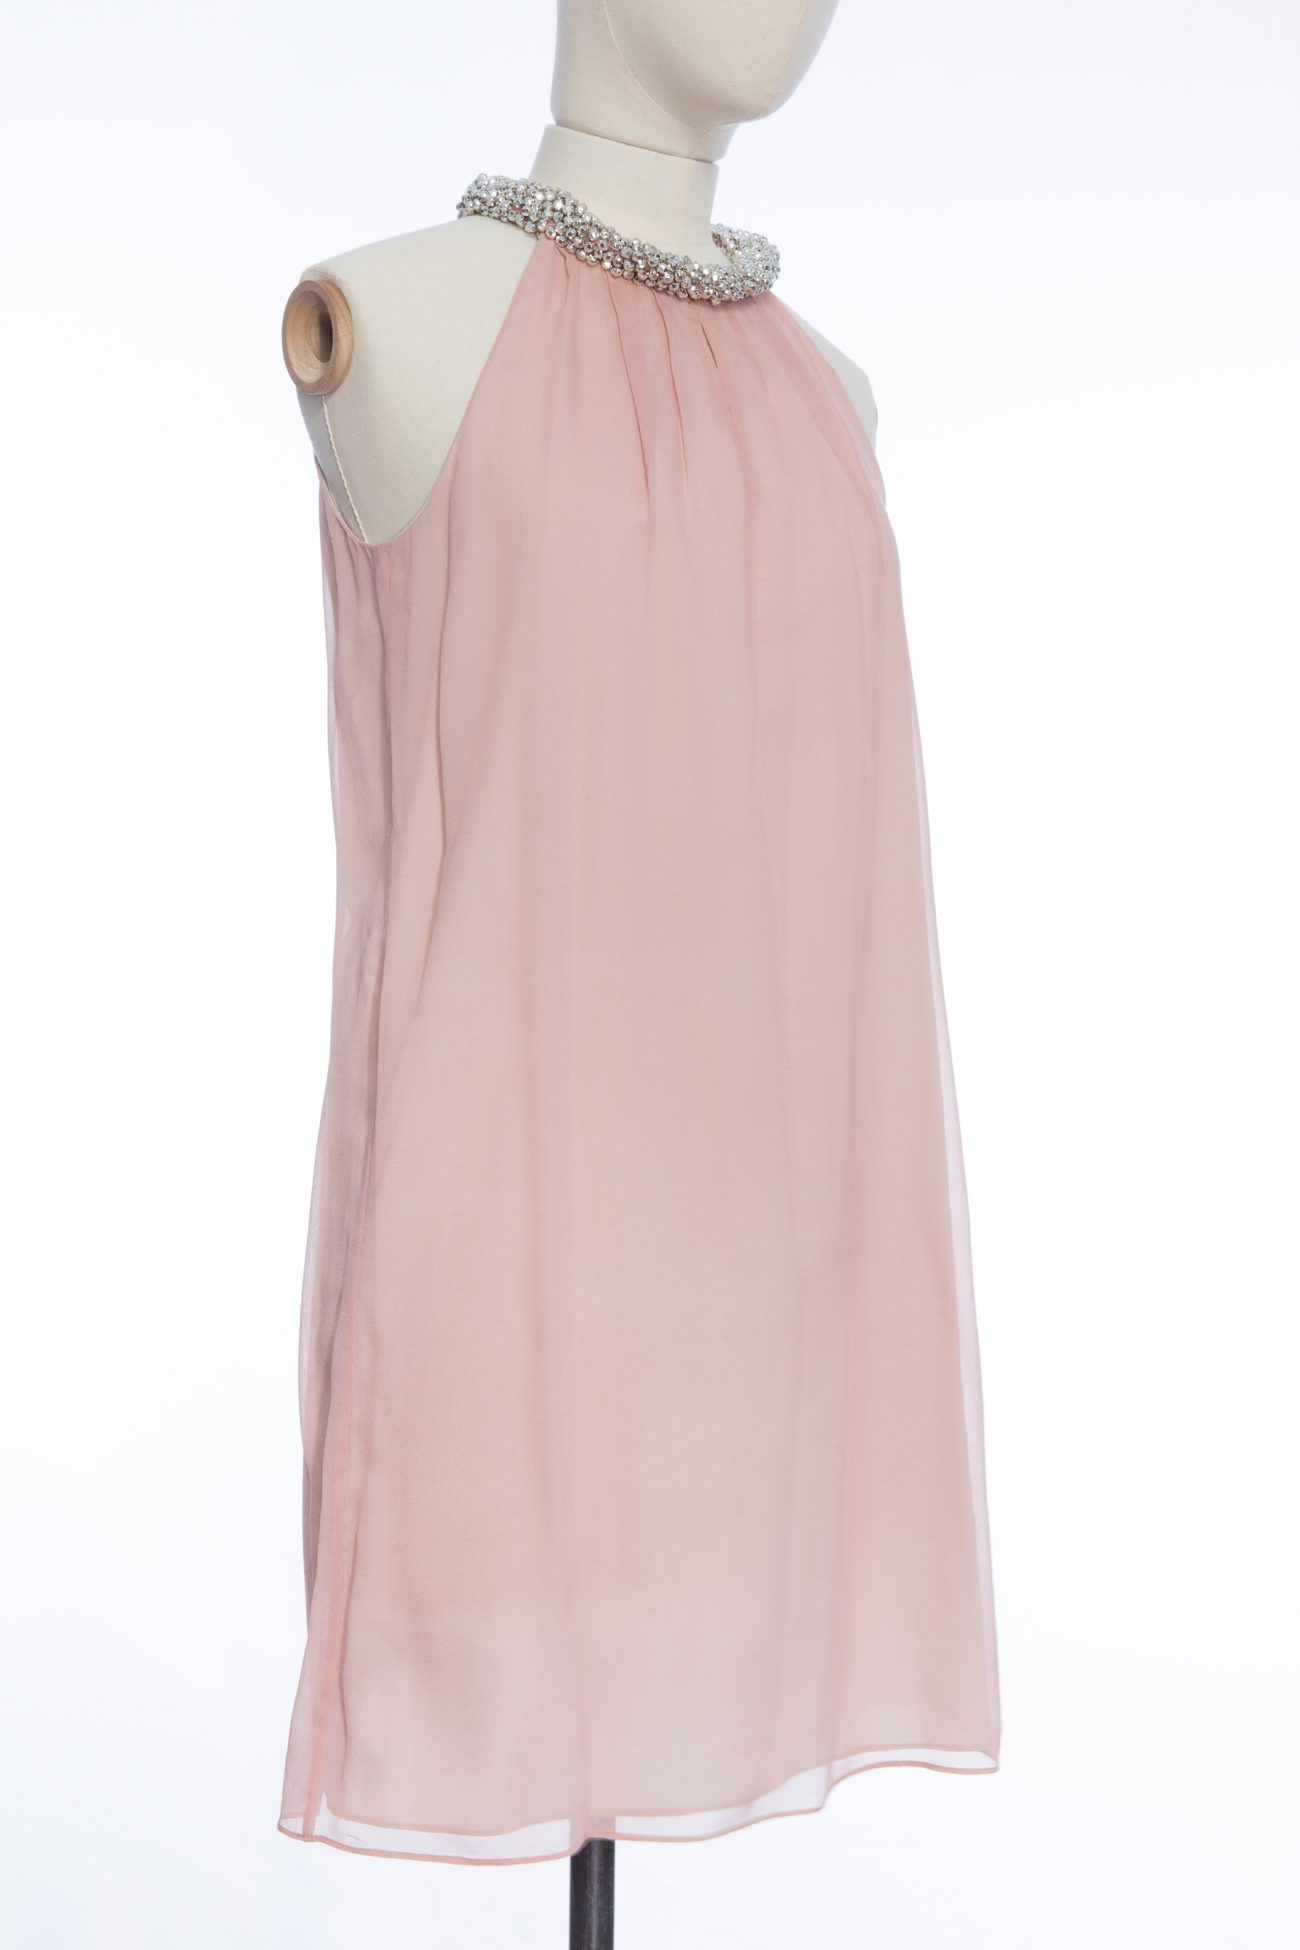 Diane Von Furstenberg tunic dress, 0